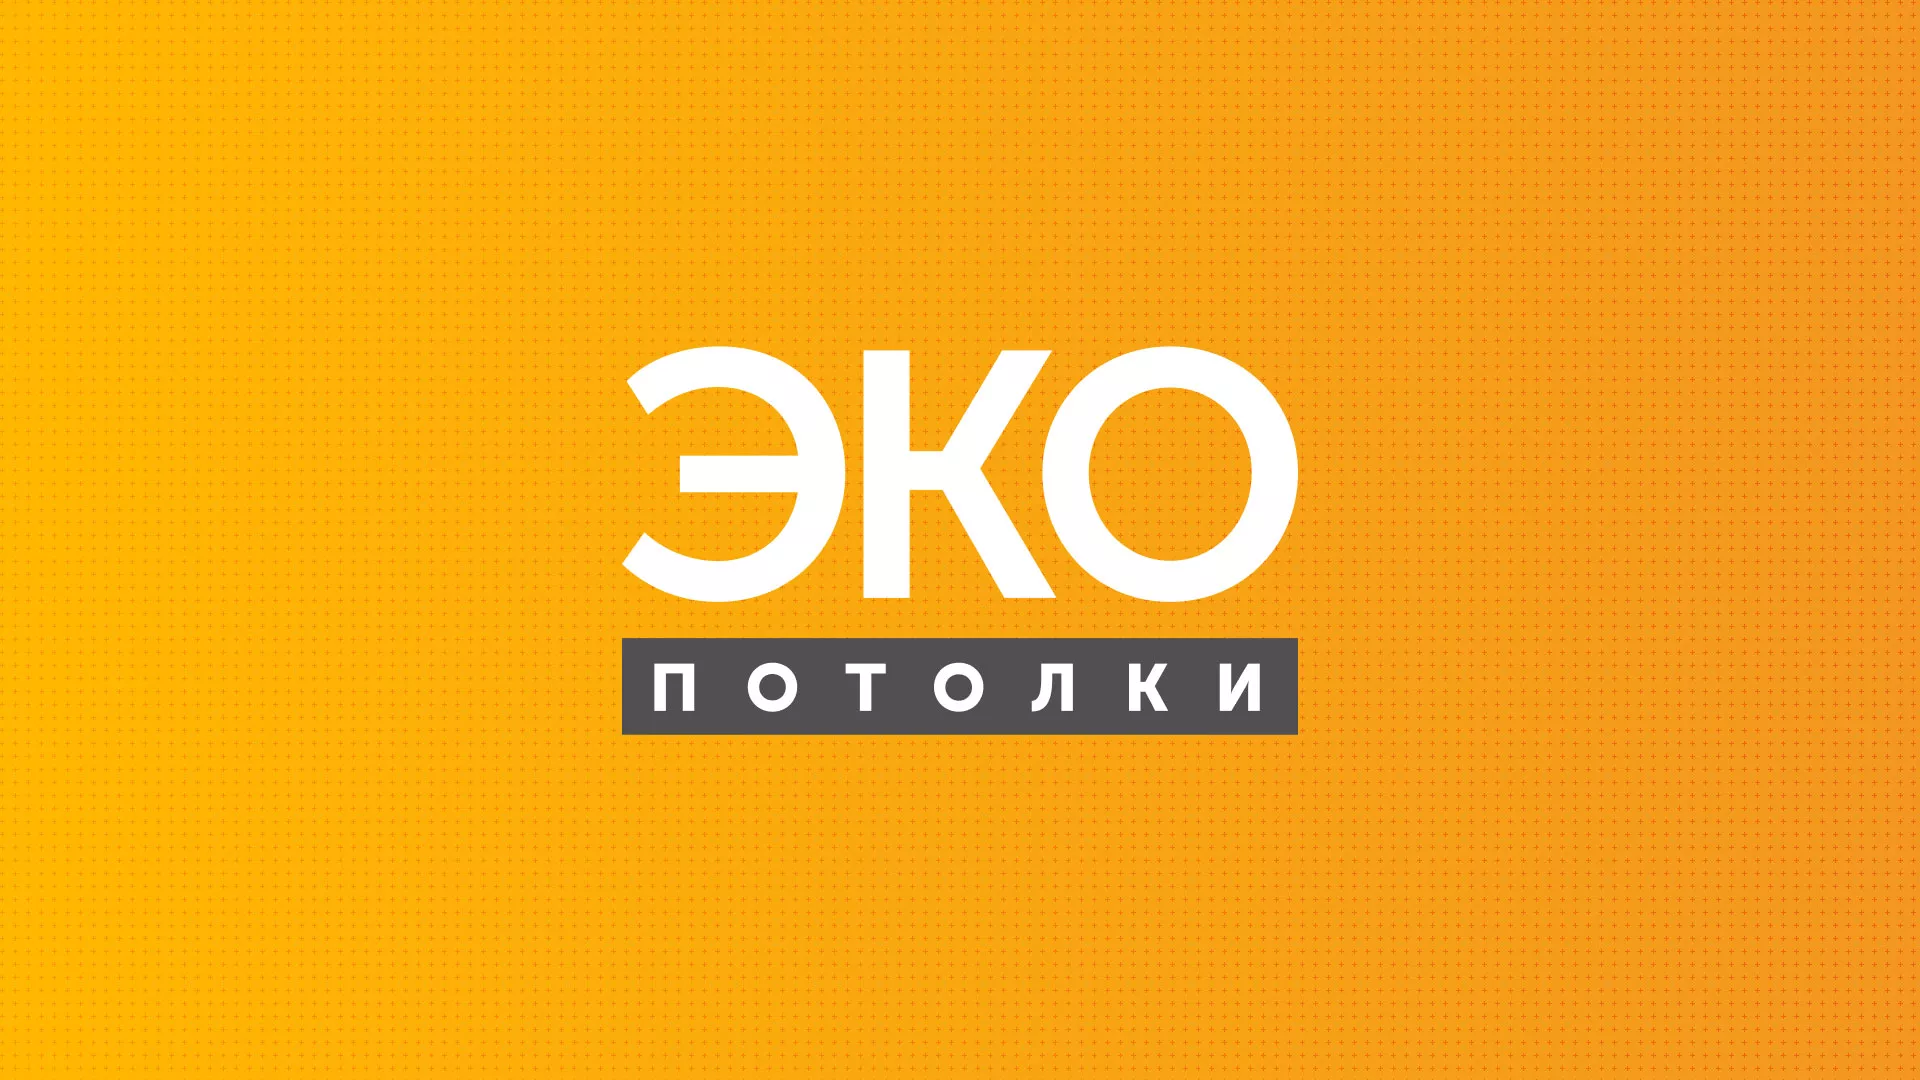 Разработка сайта по натяжным потолкам «Эко Потолки» в Жукове